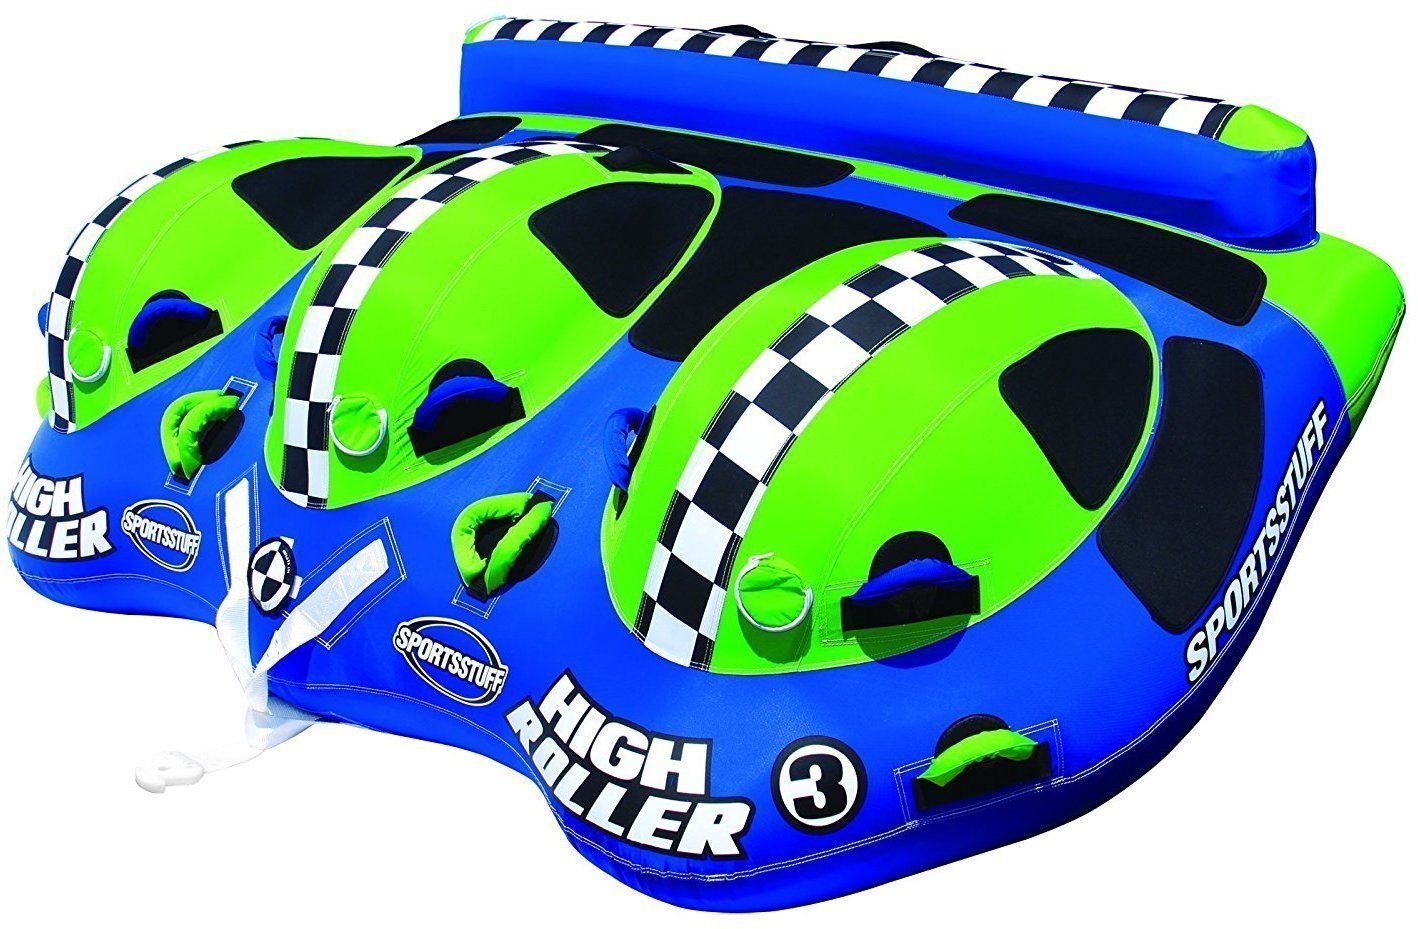 Towables / Barca Sportsstuff Towable High Roller 3 Personen Blue/Green